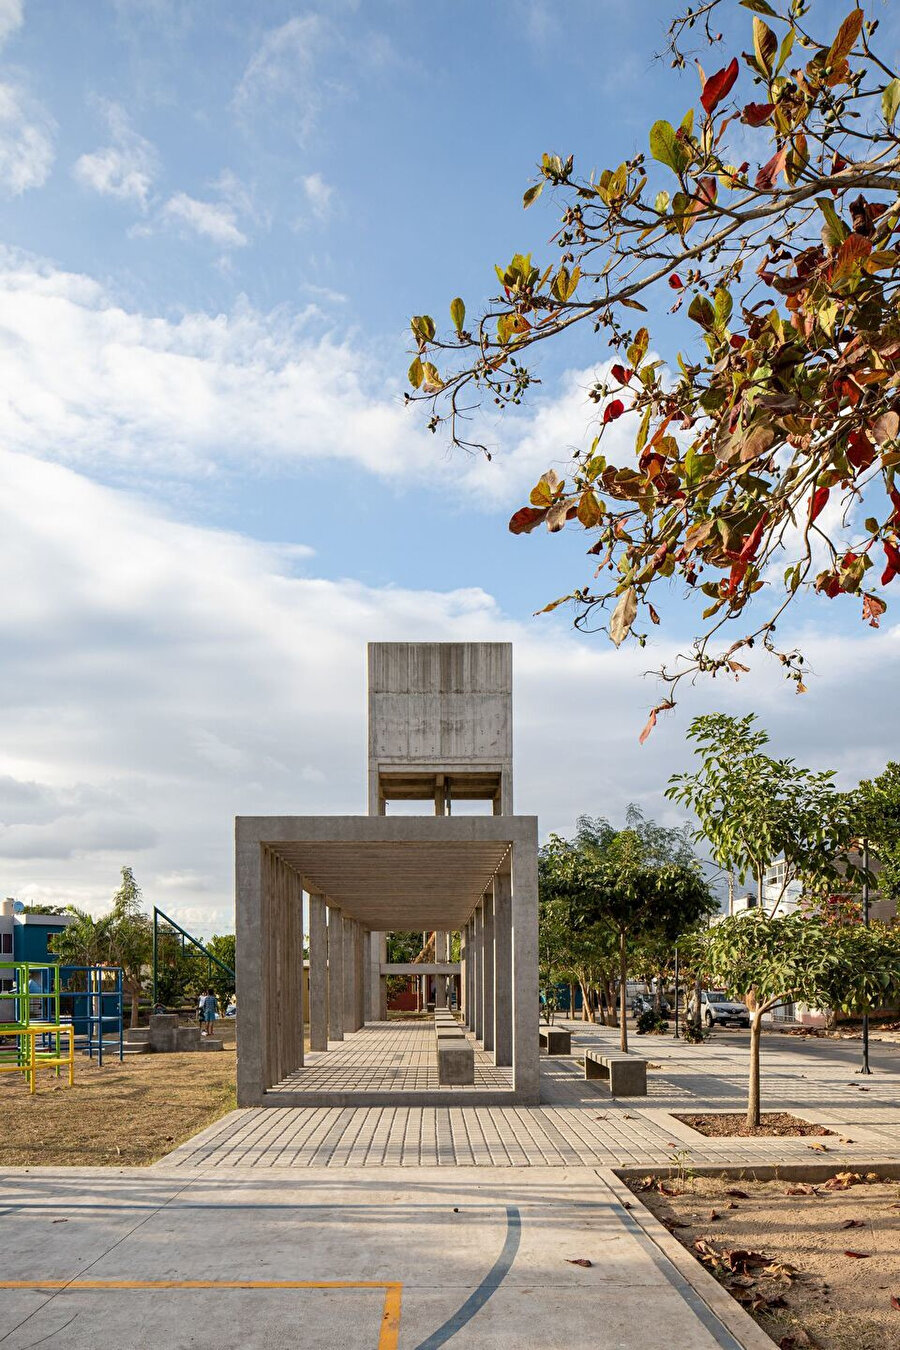 Acaponeta Publico Park’ın belli bir modüler ritim yakalayan brütalist yaklaşım fikri ile oyun alanı birlikteliği kamusal alan tasarımında farklılığını yansıtıyor.